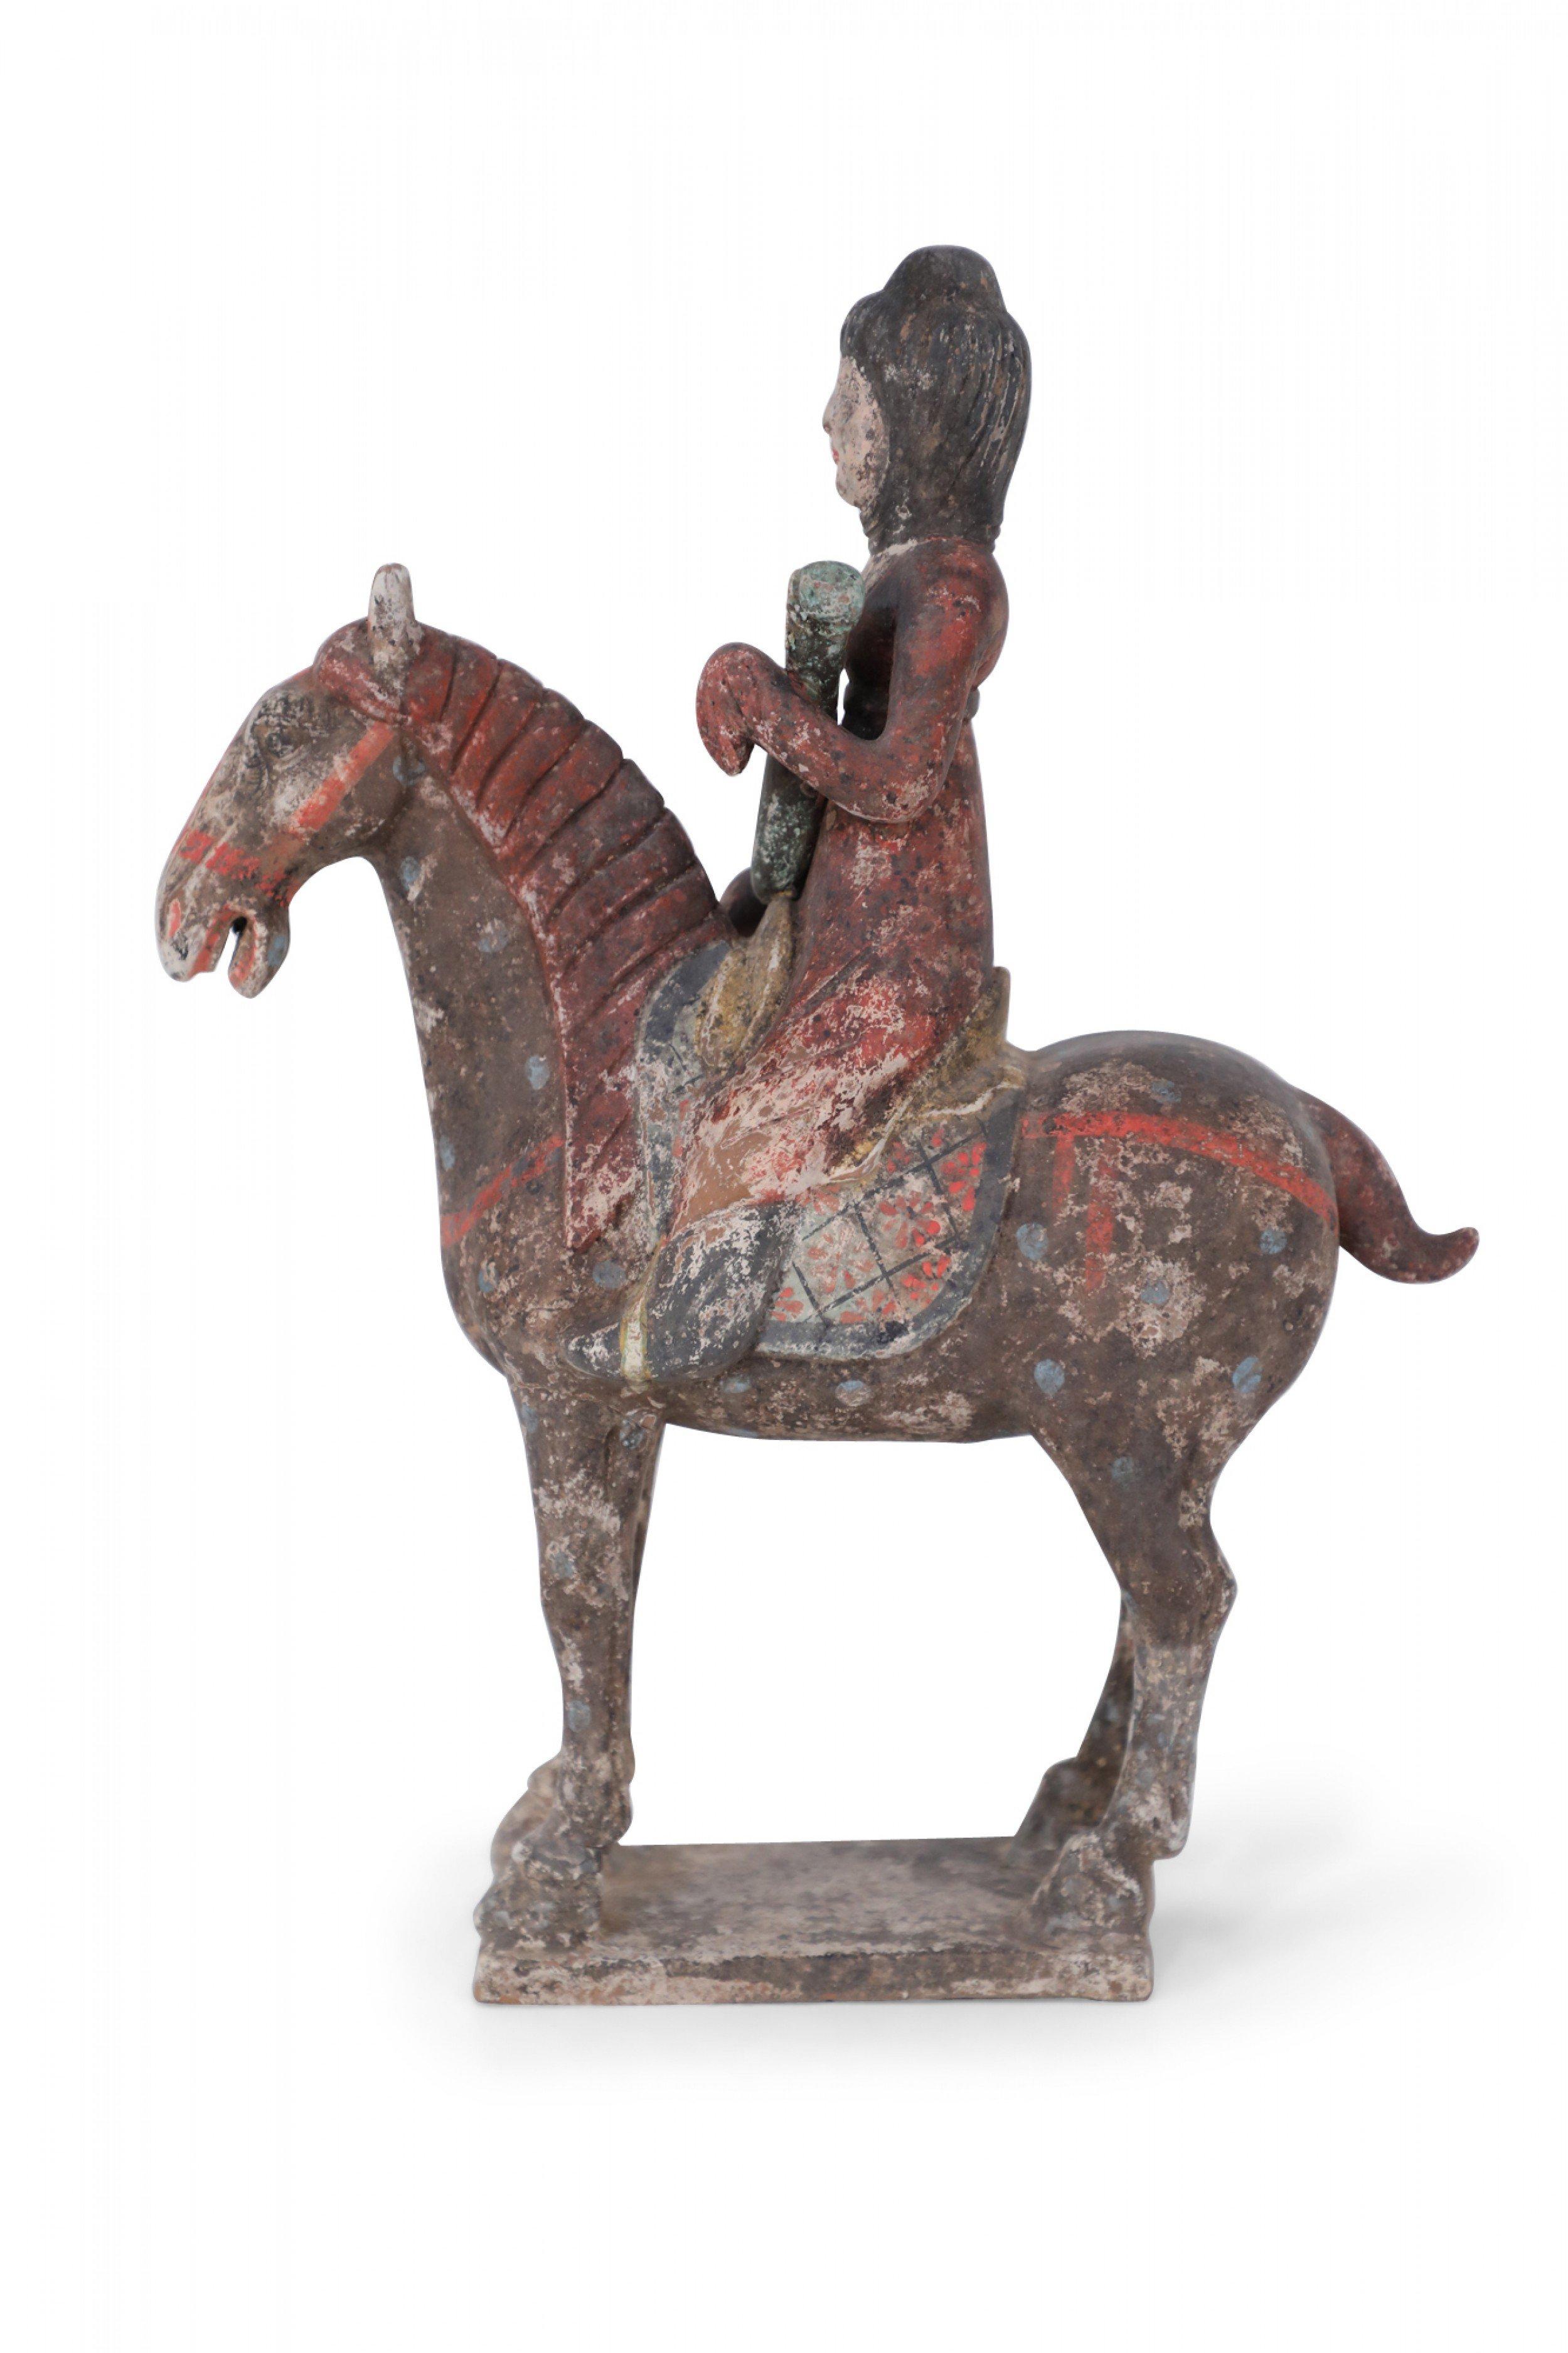 Ancienne figurine funéraire chinoise en terre cuite de style dynastie Tang représentant une jeune fille en vêtement rouge tenant un objet et chevauchant un cheval brun foncé, reposant sur une base texturée.
 